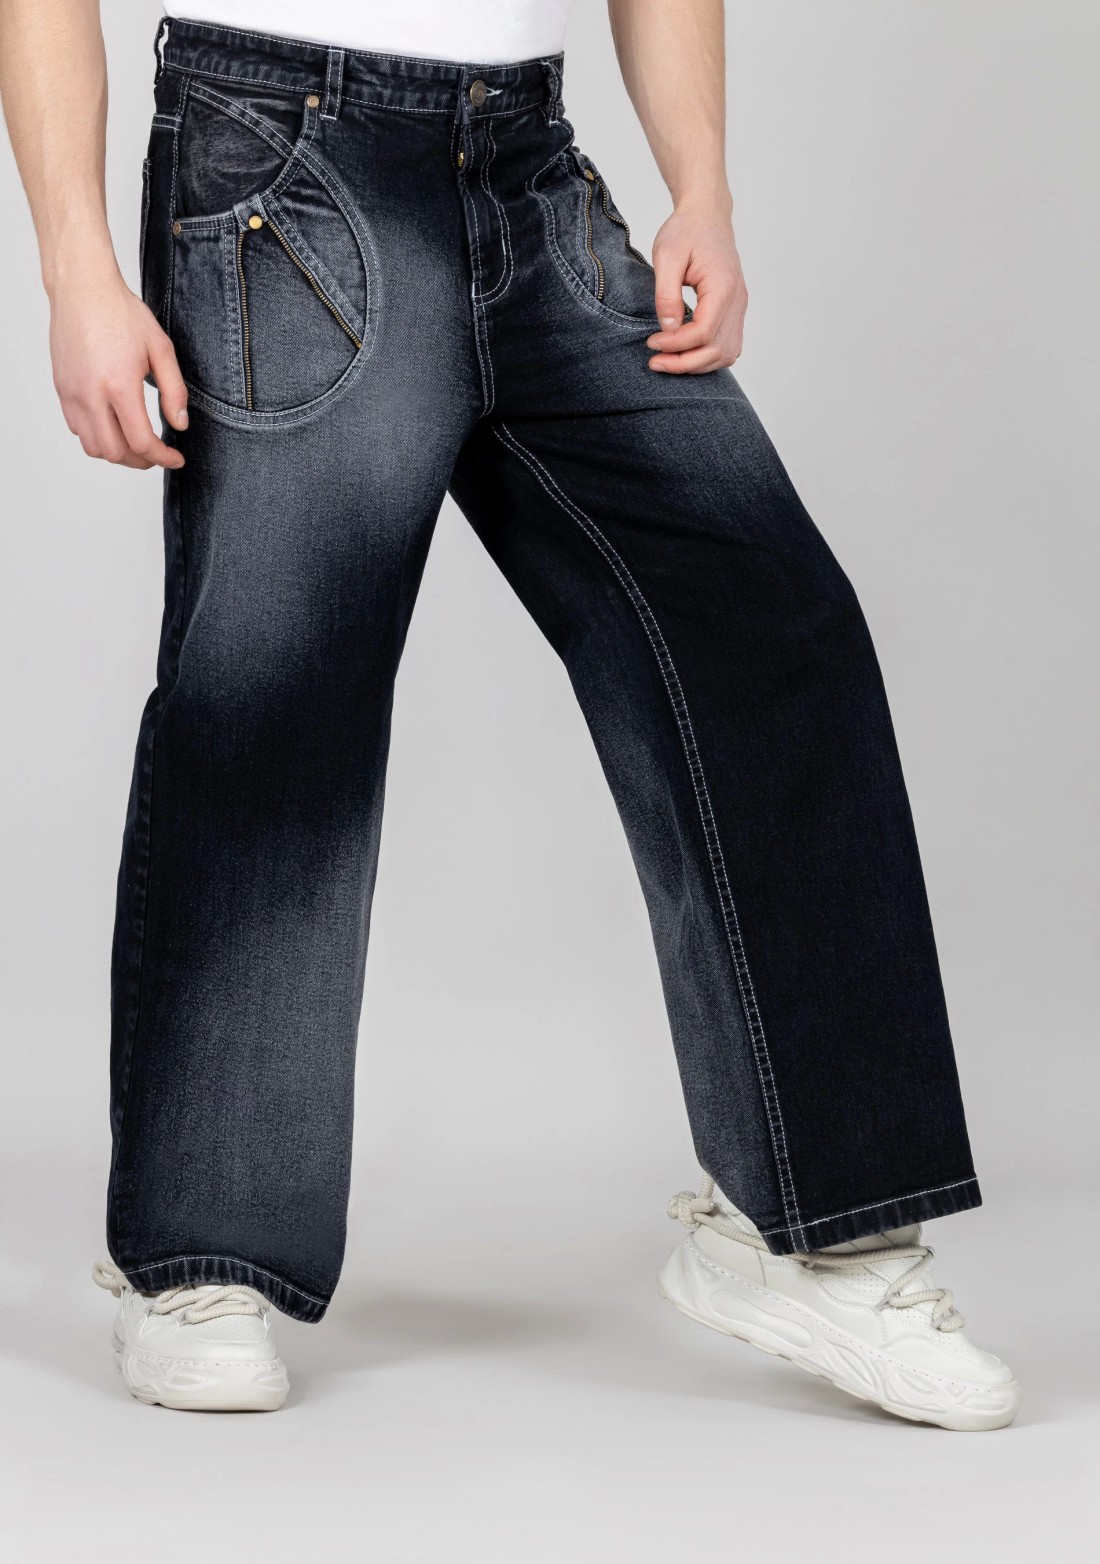 Black Wide Leg Men's Fashion Jeans